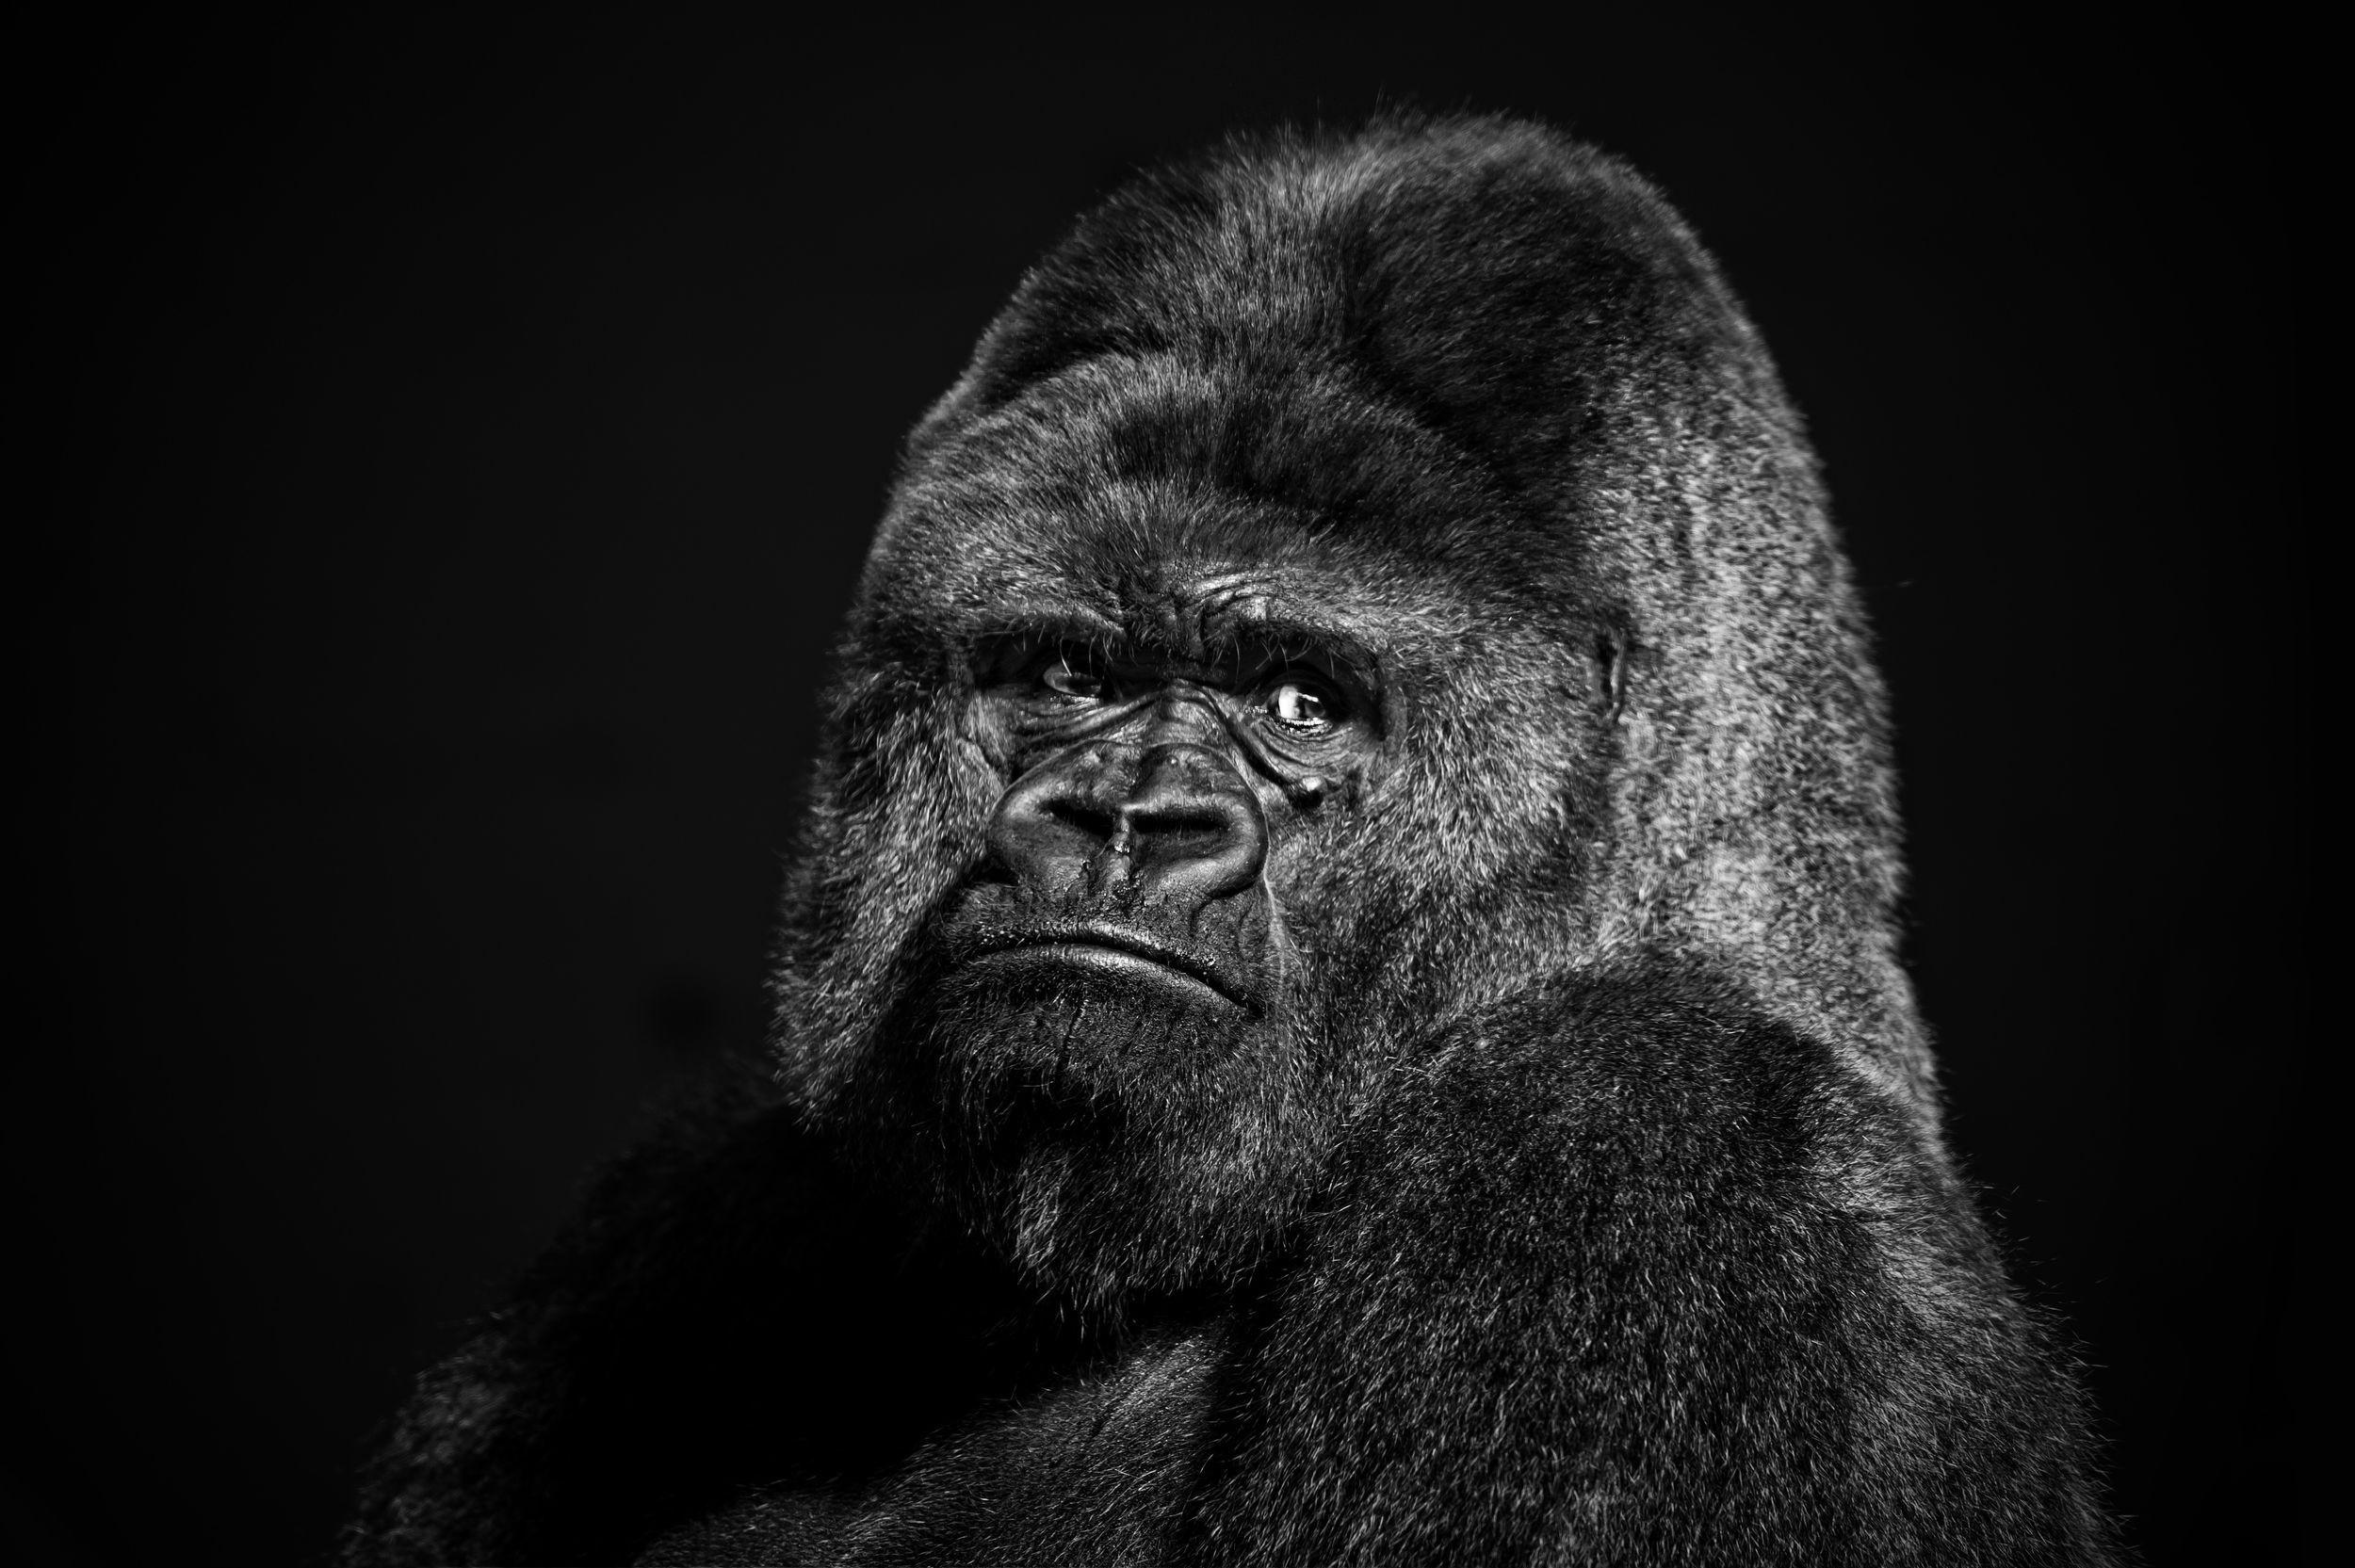  face black animals monochrome gorillas darkness